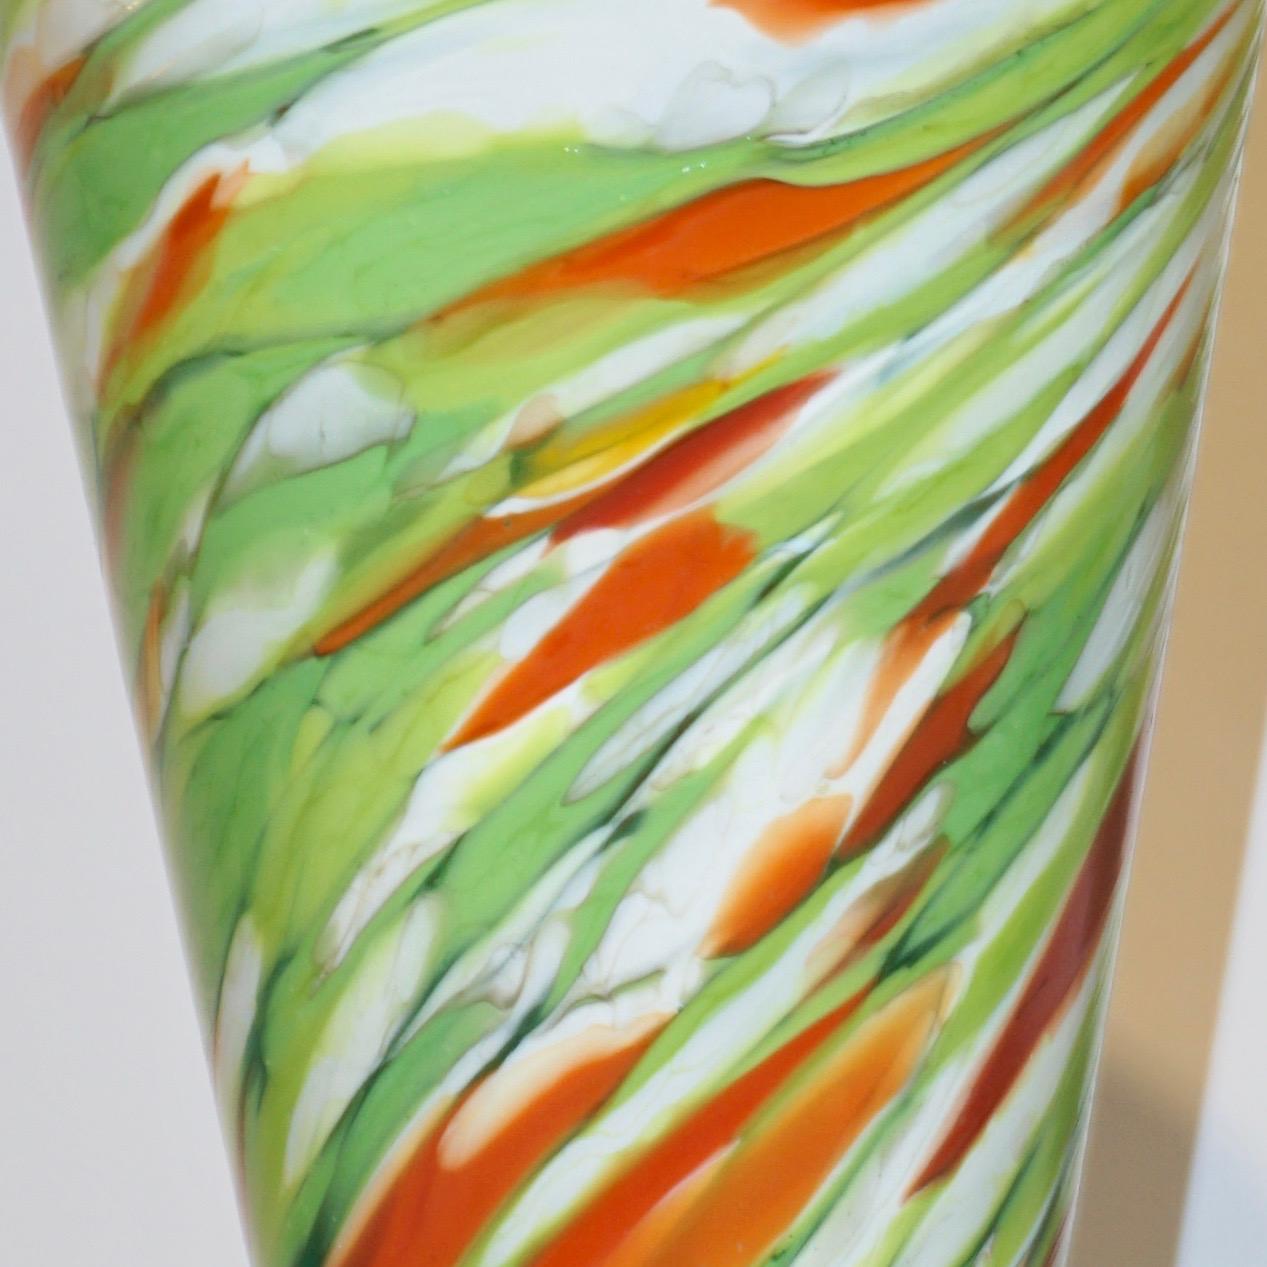 Ein auffälliges Paar modernistischer Vasen, signiert Cenedese, eine farbenfrohe moderne Kreation aus Muranoglas, Vorläufer des Memphis-Stils. Die konische Form ist mit Wirbeln aus Muranoglas in leuchtenden Farben auf Weiß verziert: orangefarbener